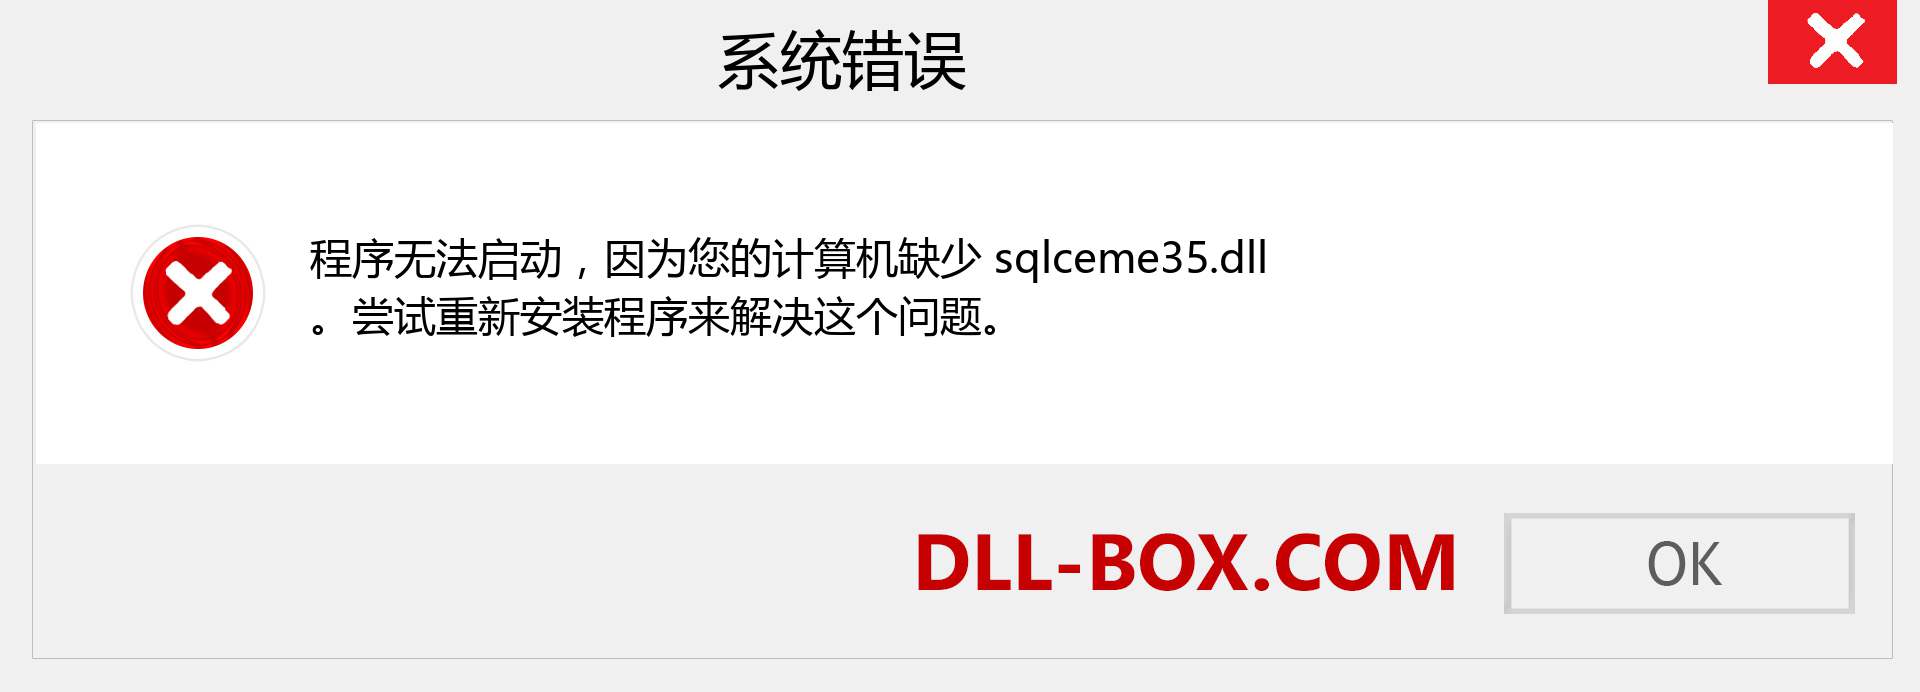 sqlceme35.dll 文件丢失？。 适用于 Windows 7、8、10 的下载 - 修复 Windows、照片、图像上的 sqlceme35 dll 丢失错误